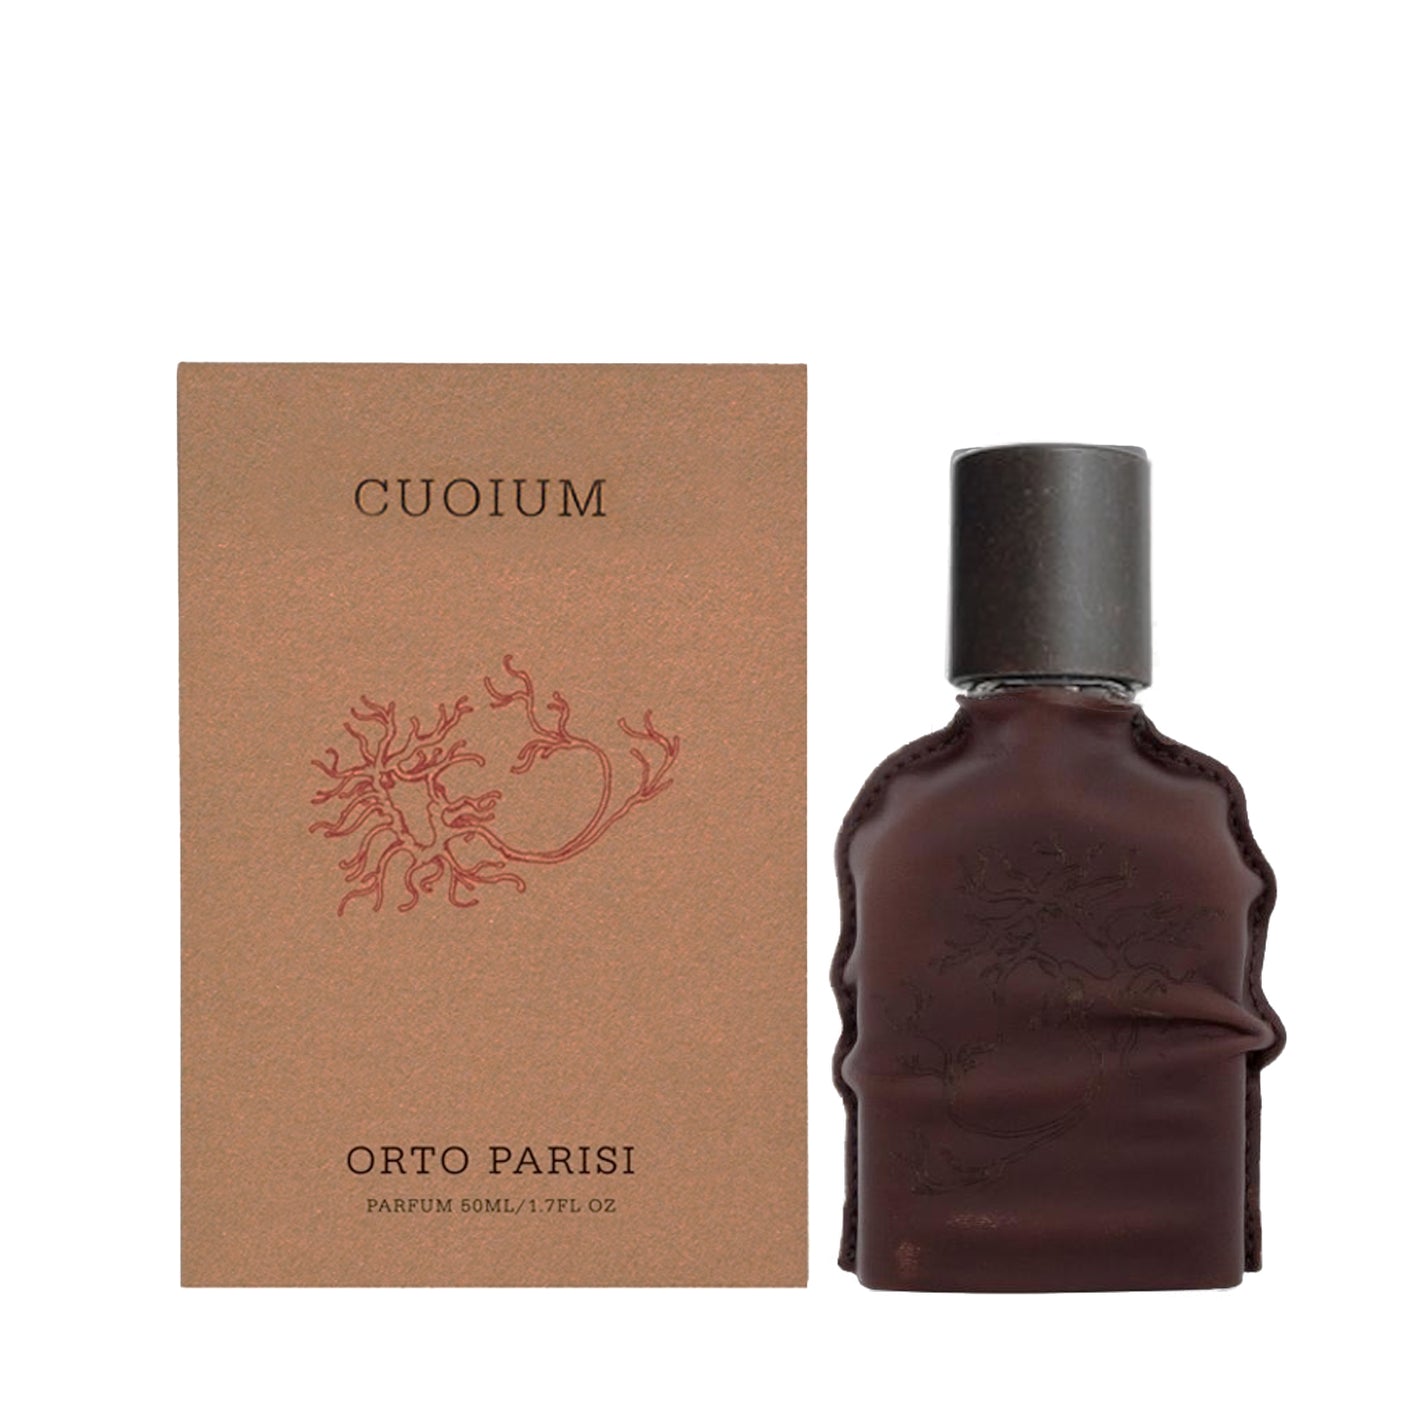 Orto Parisi Cuoium Parfum